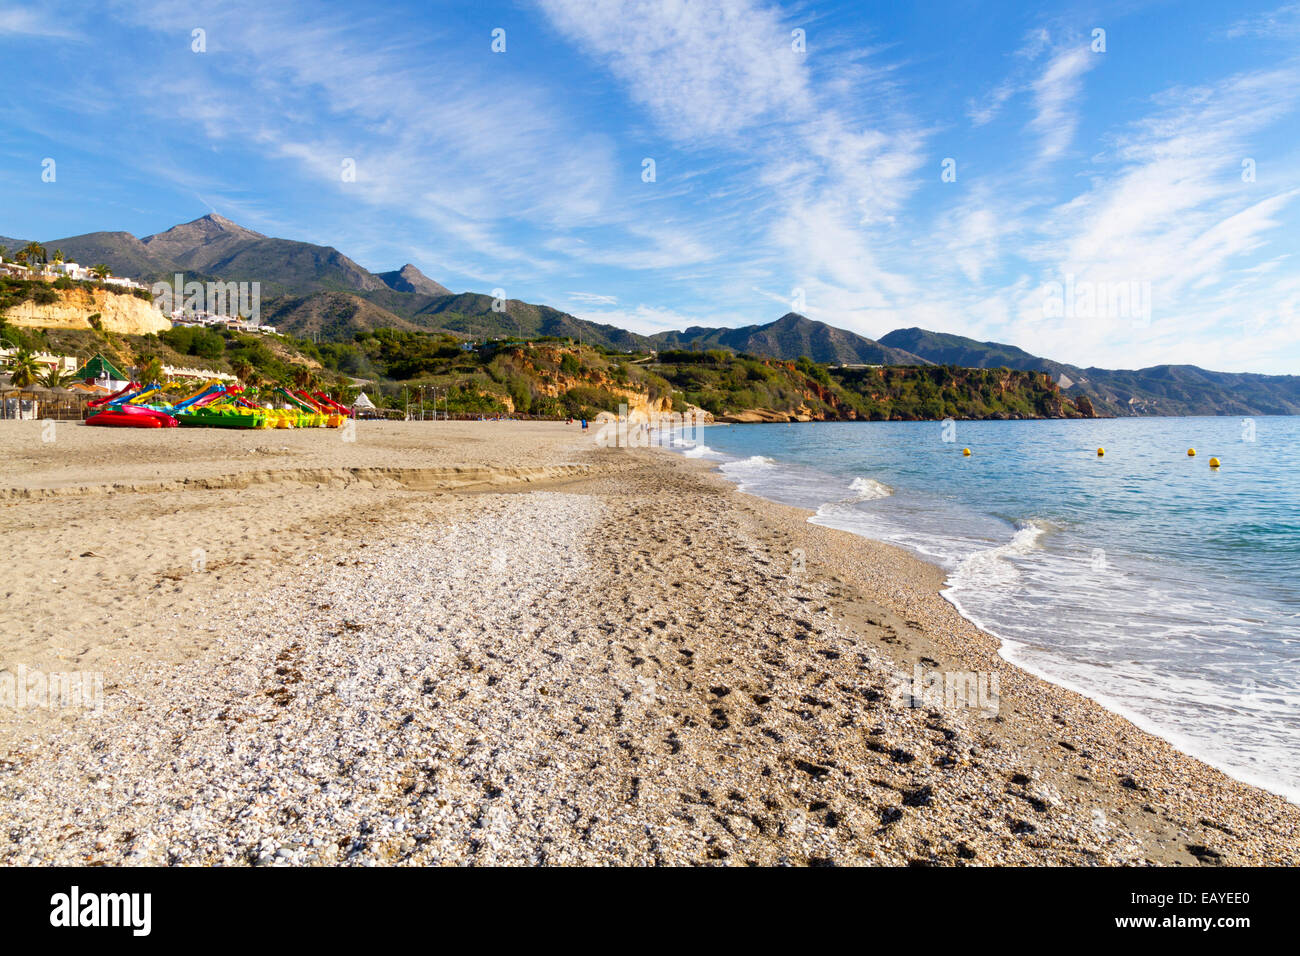 Playa Del Burriana beach in Nerja Spain on the Costa Del Sol Stock Photo